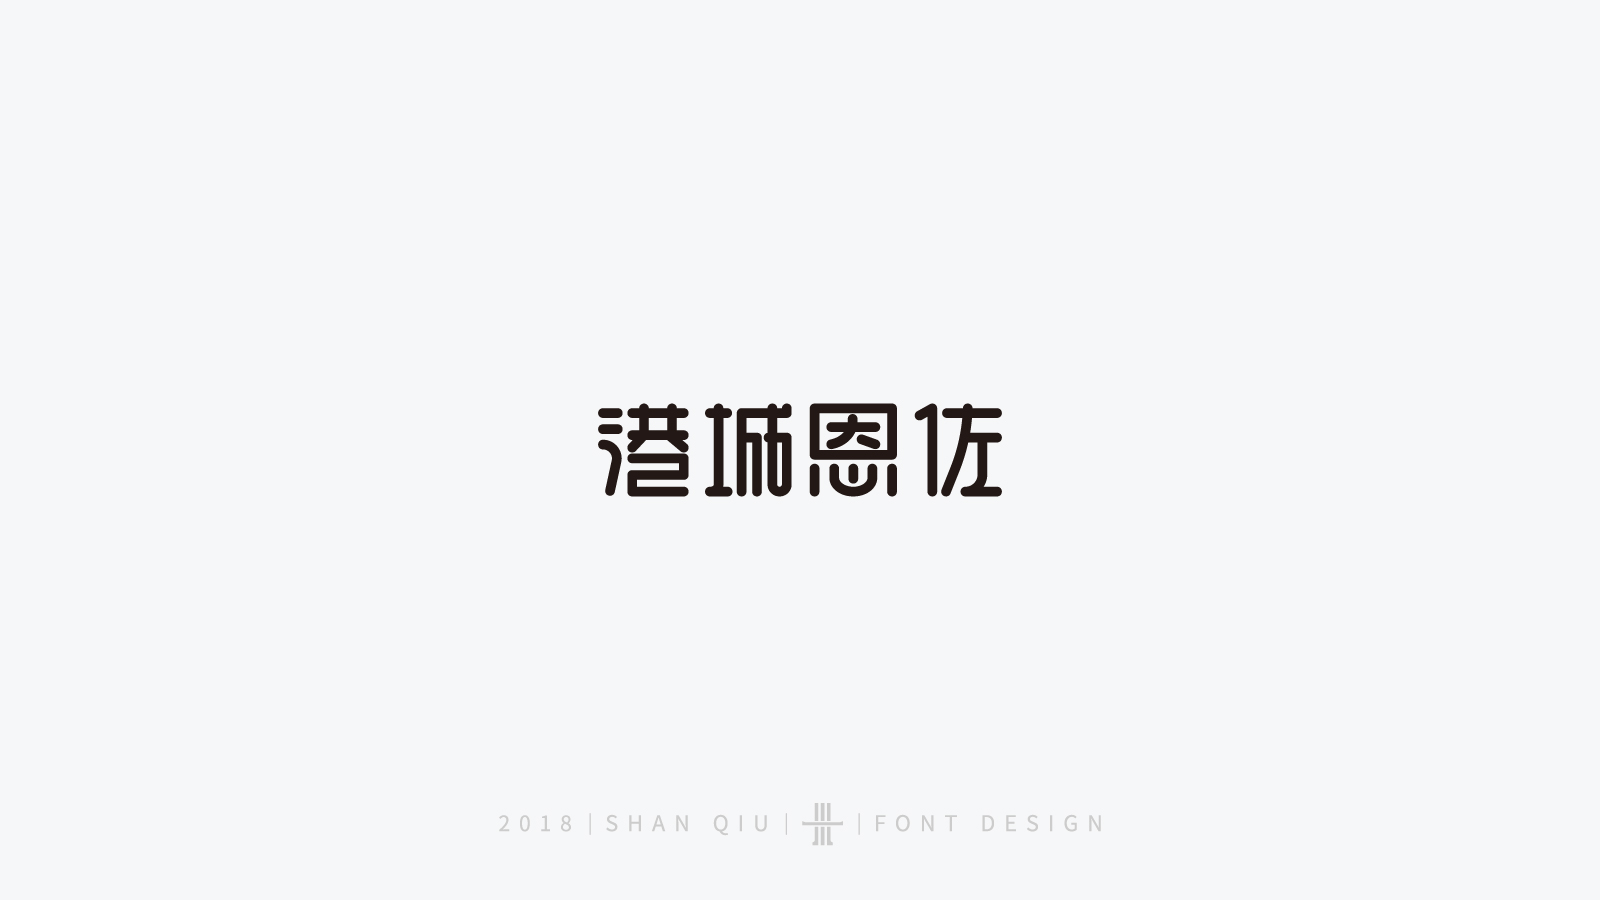 字体设计合集四_周恩山_【68design】